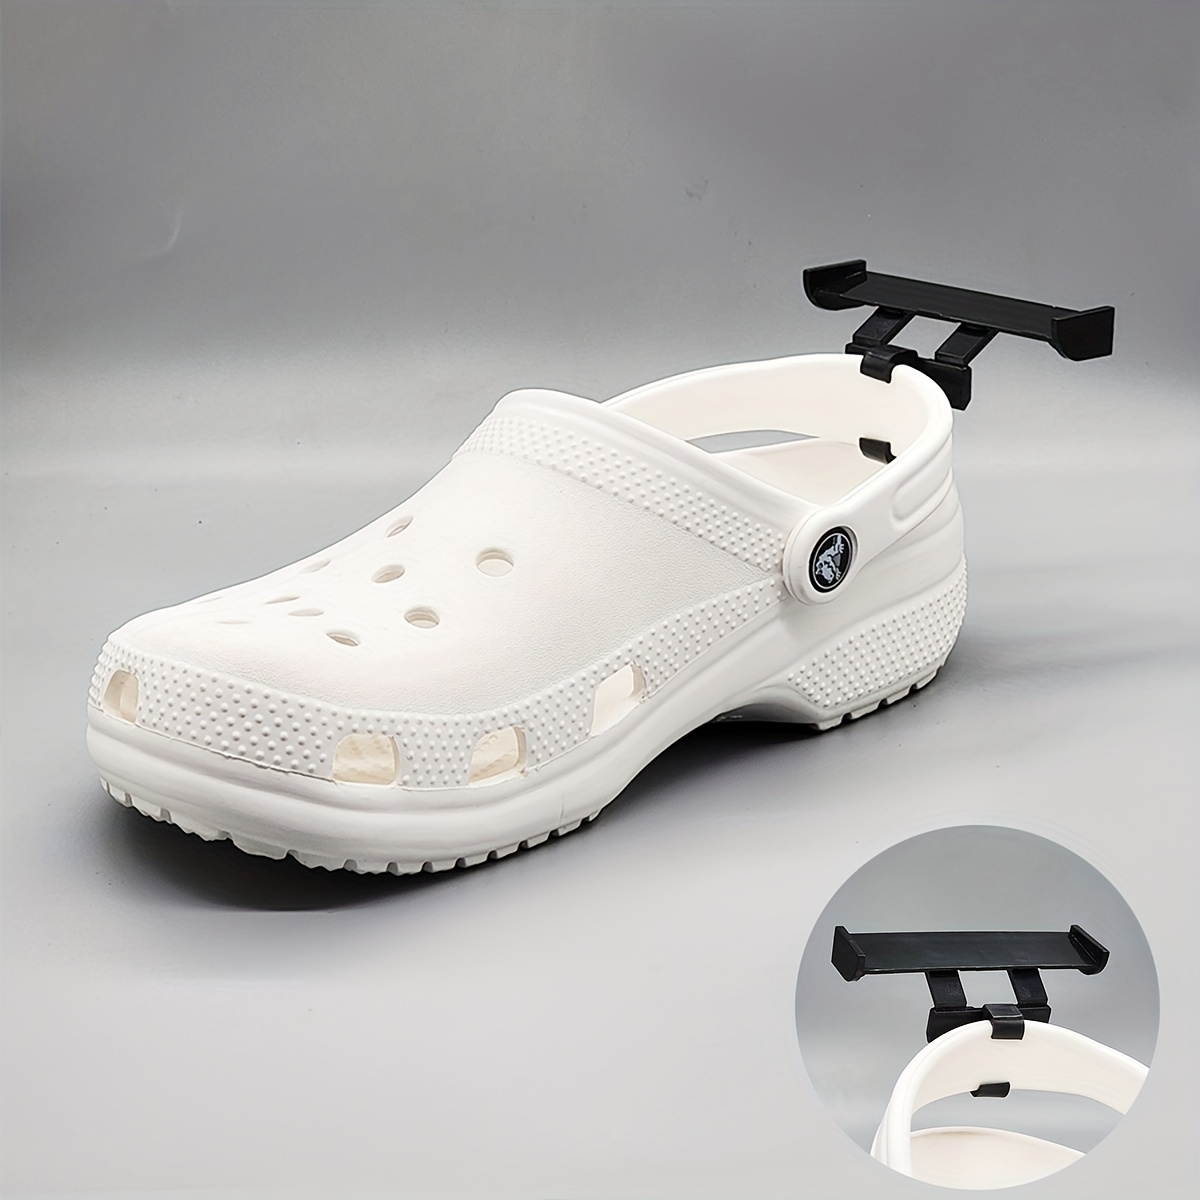 Shoe Charms For Crocs,croc Balls,1pair Croc Nuts For Shoes,croc